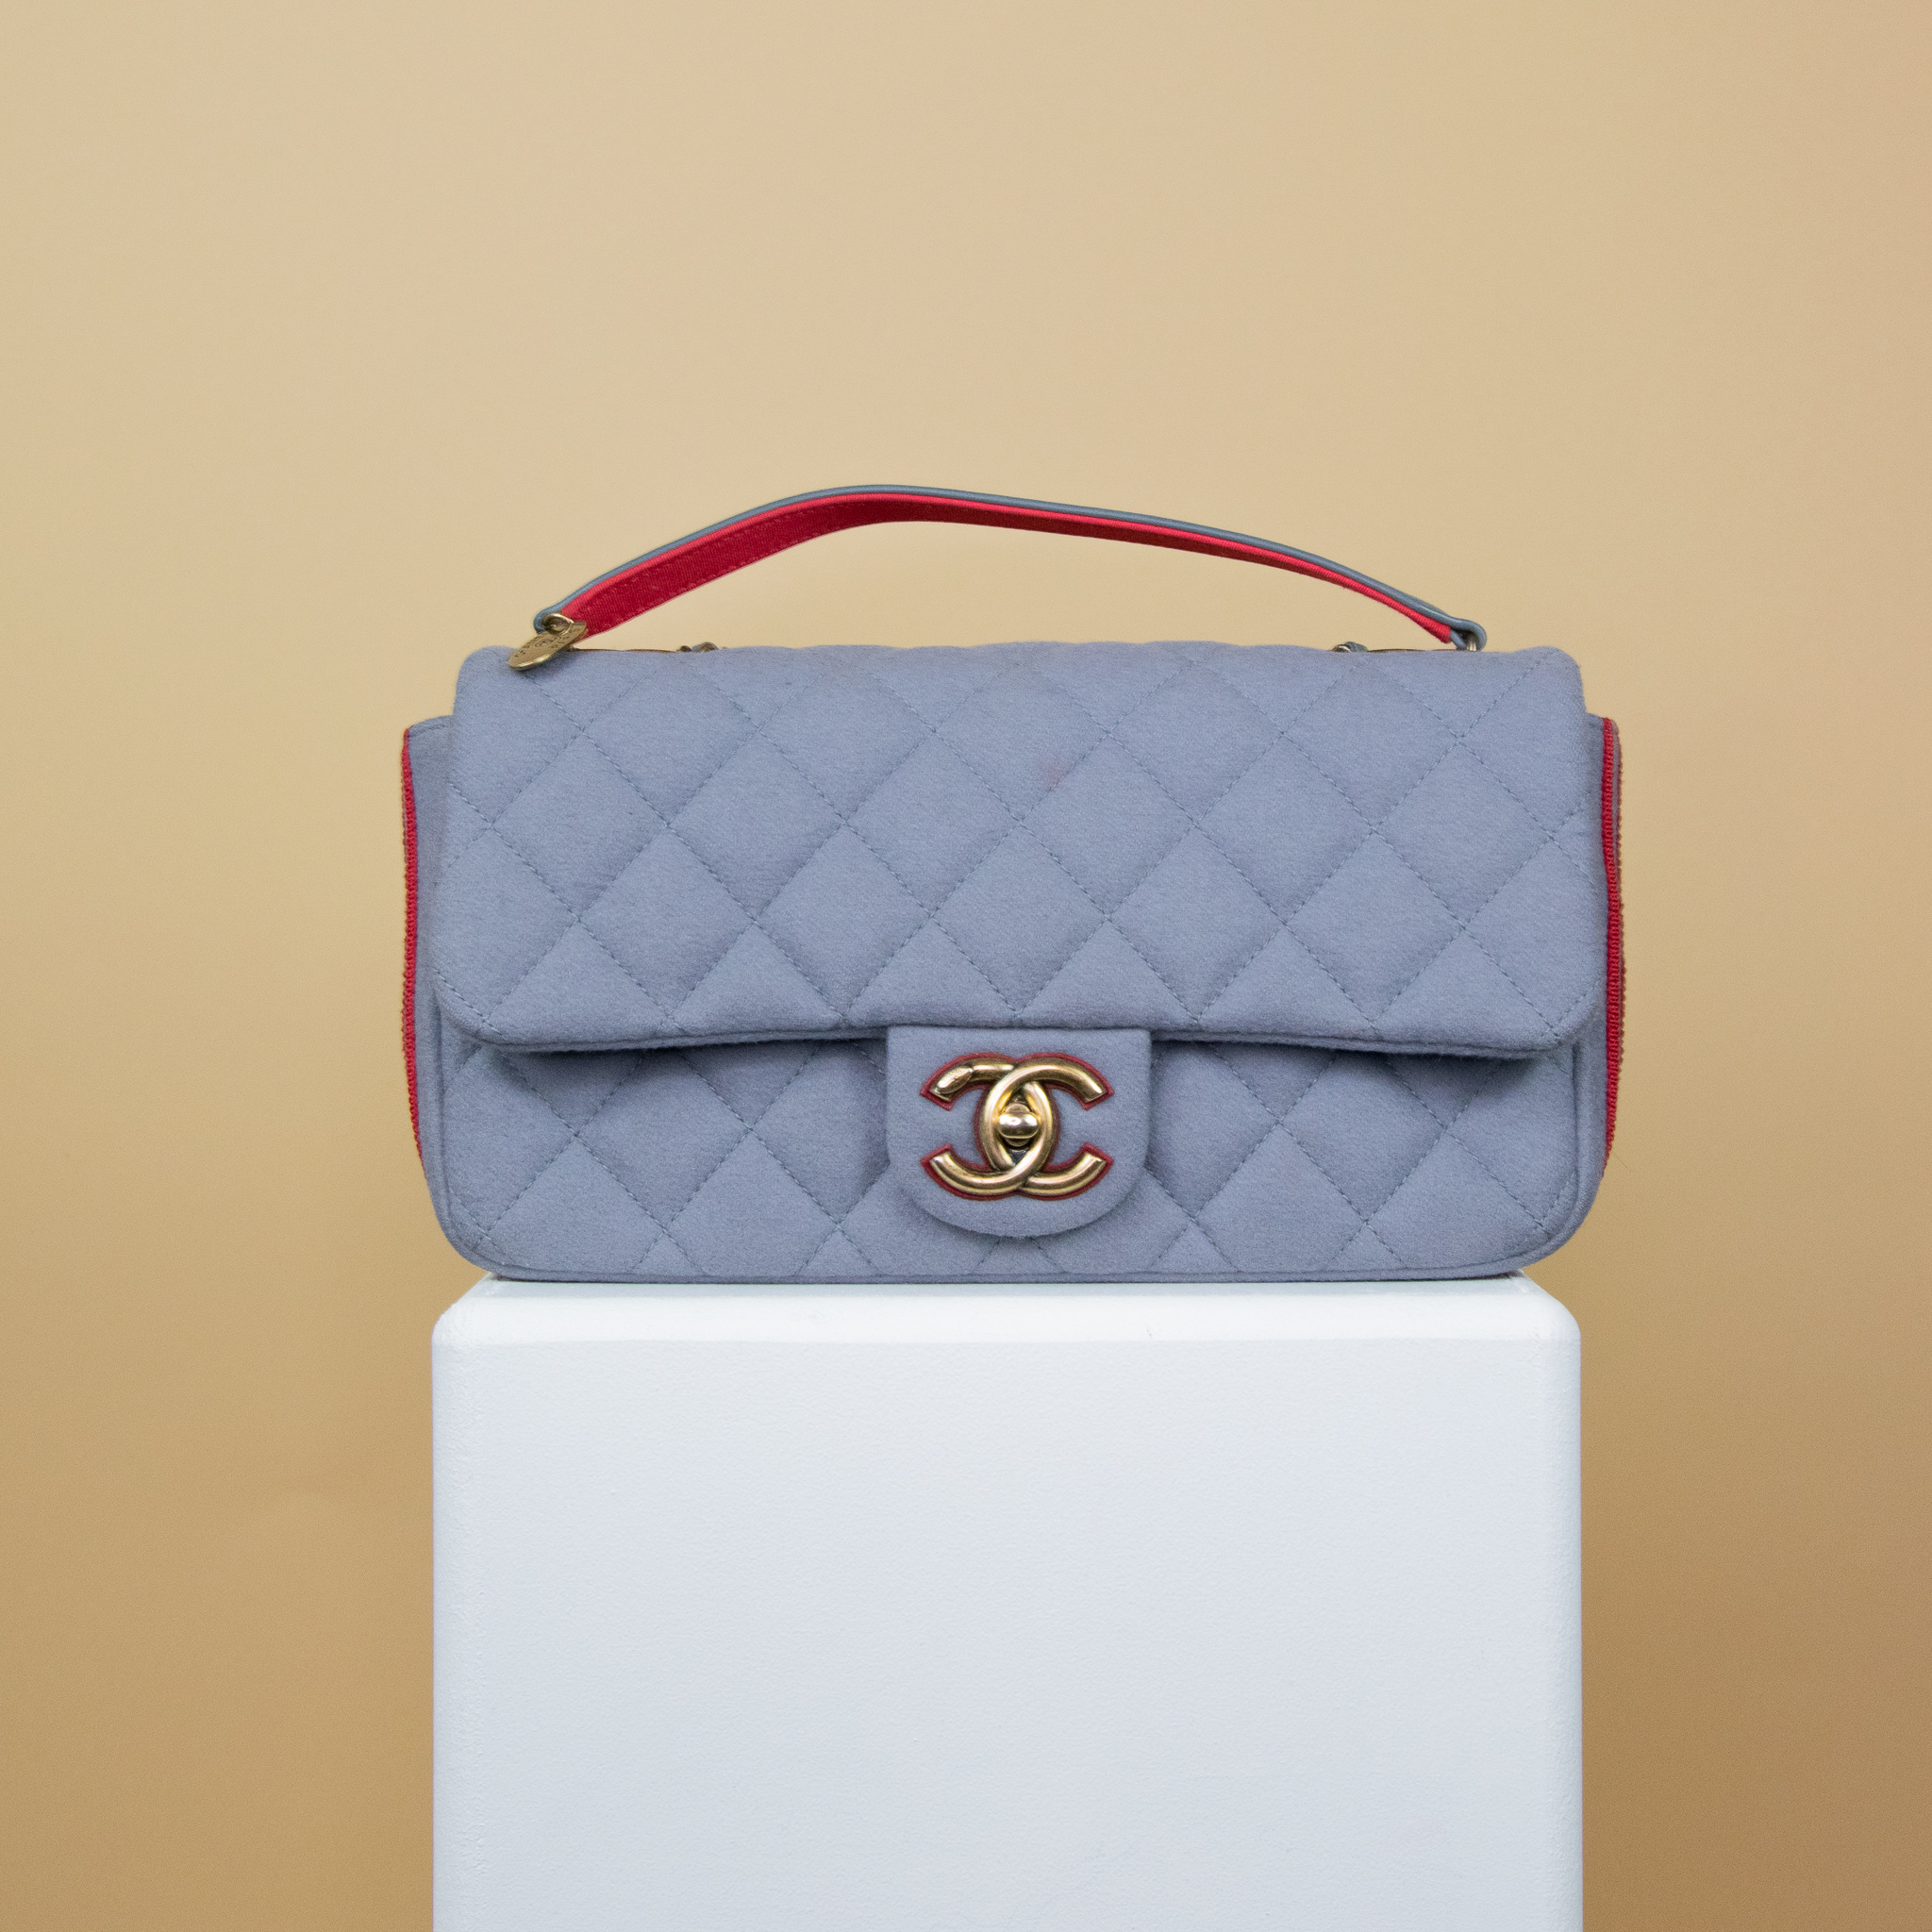 Chanel Flap Bag aus der Salzburg Kollektion aus Wolle